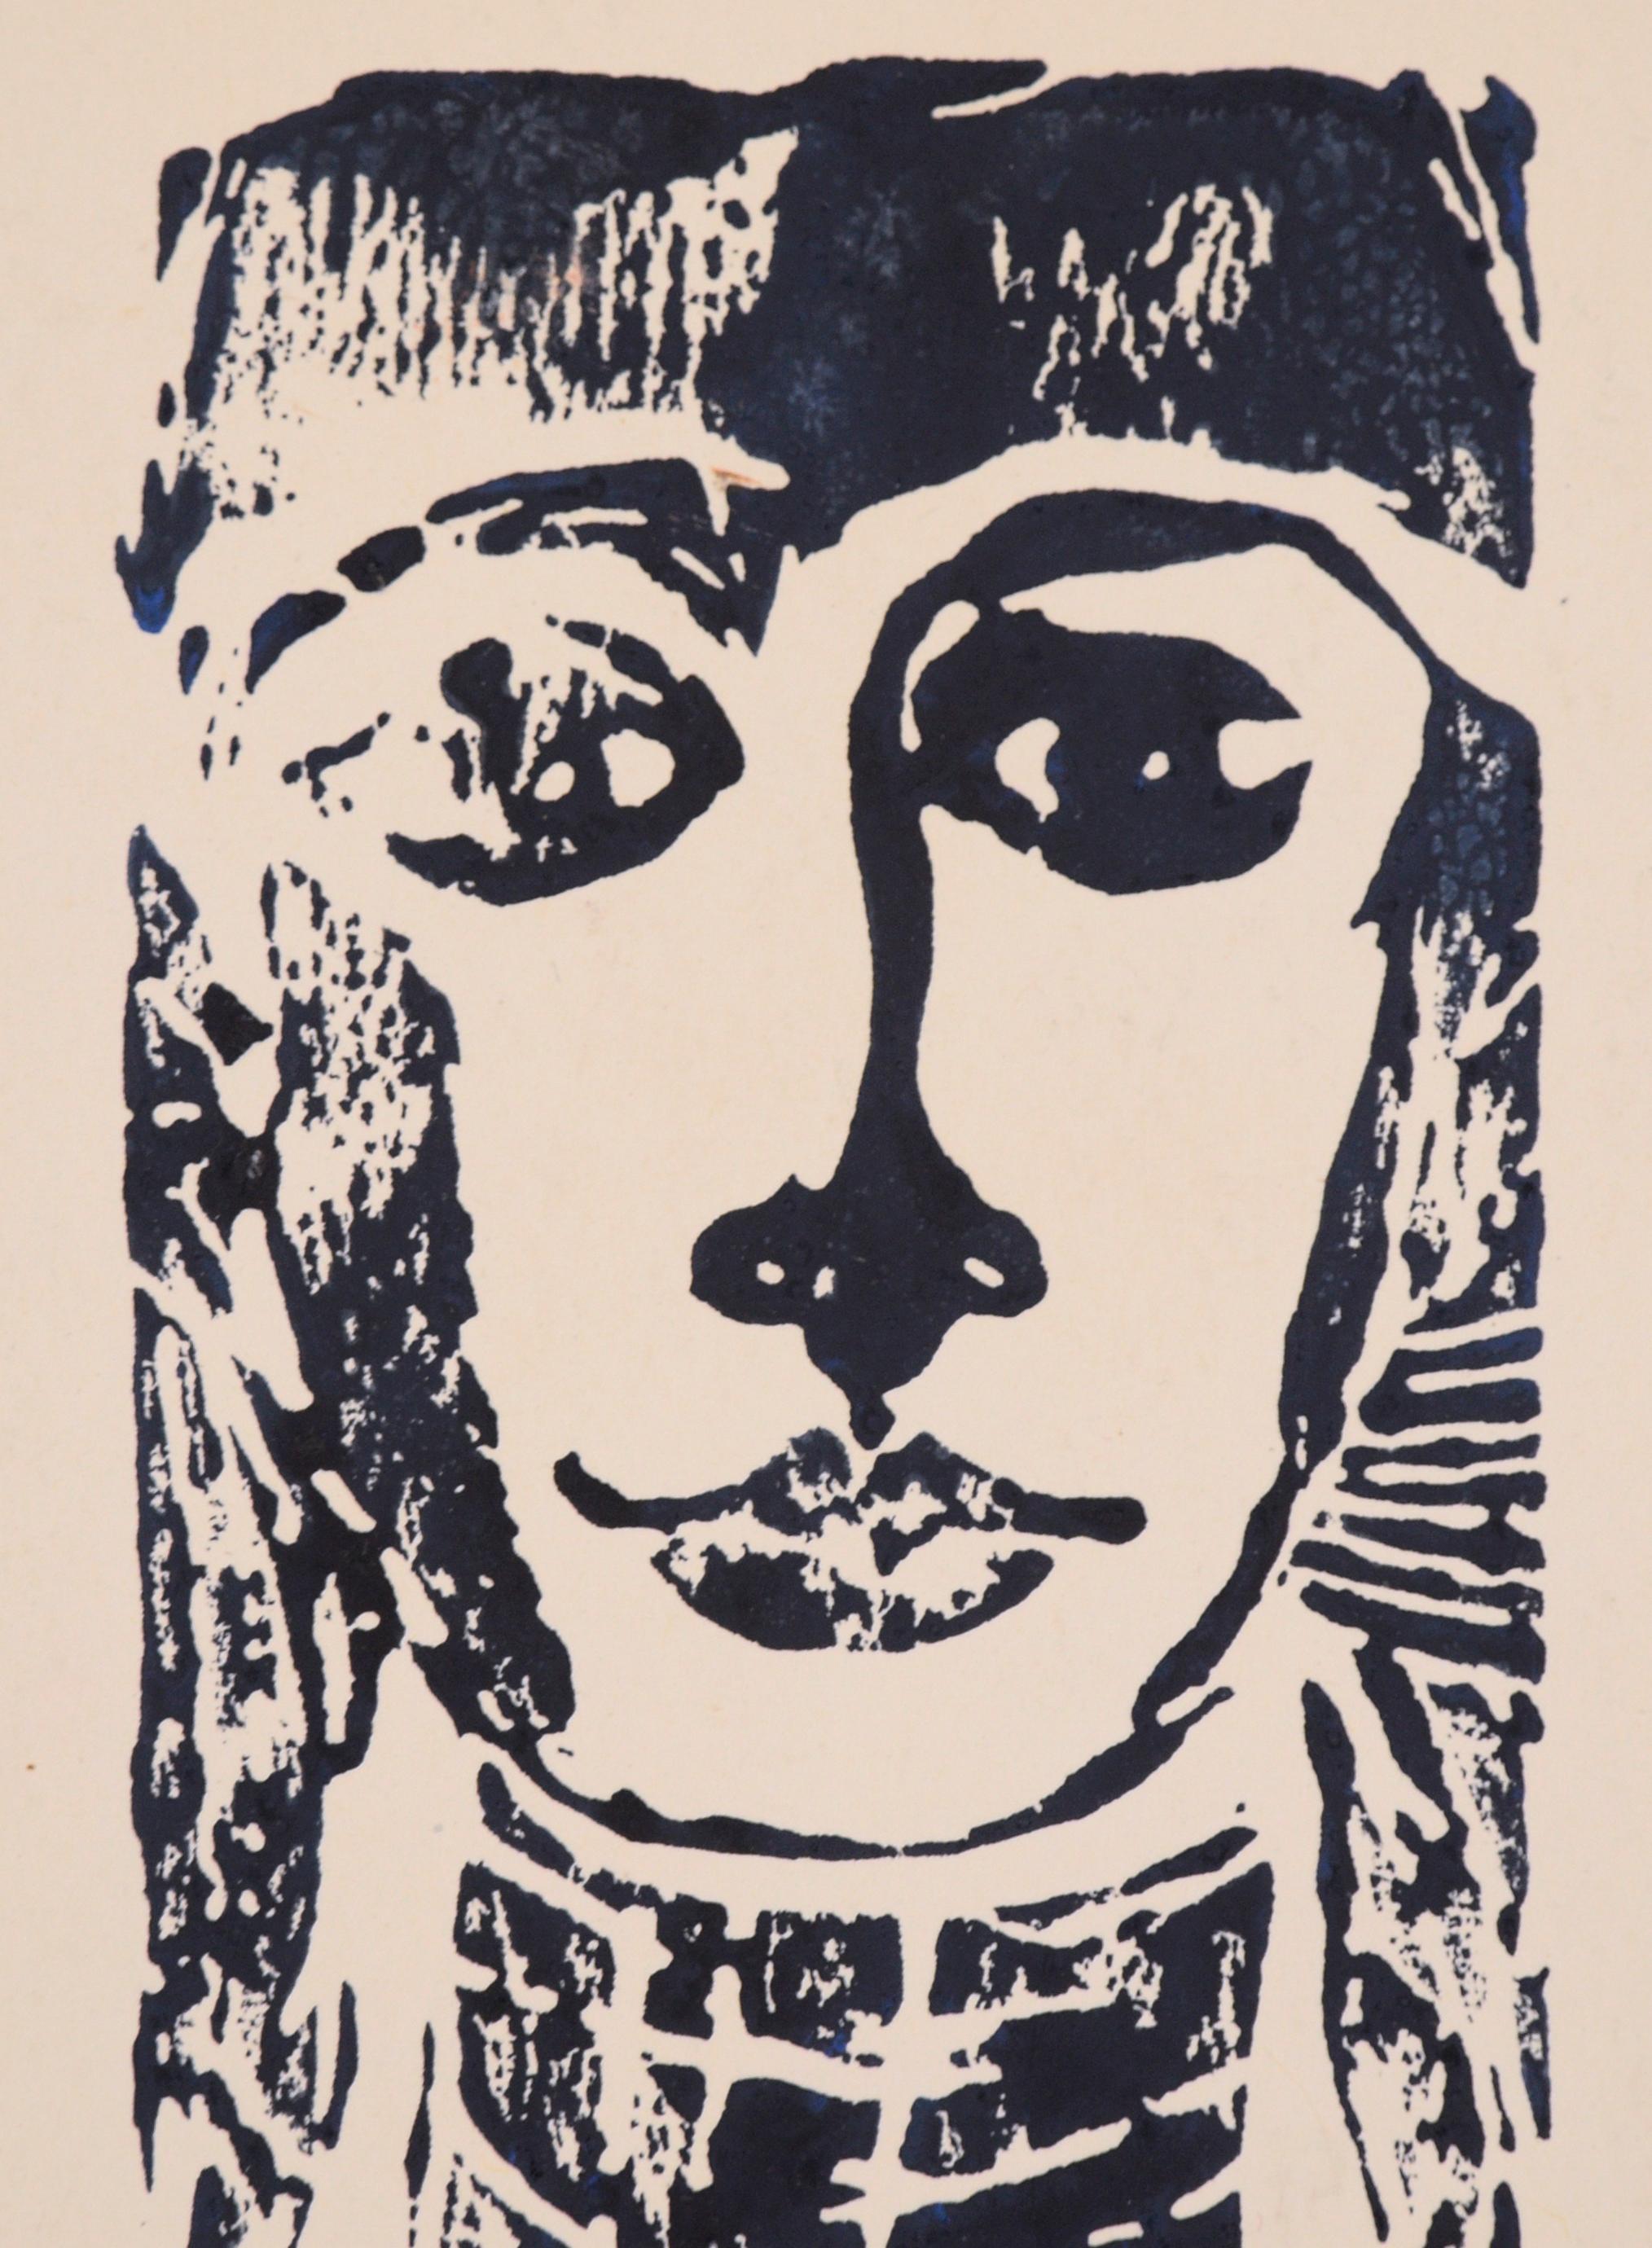 Holzschnitt-Porträt einer Frau (Moderne), Print, von J. Duffy